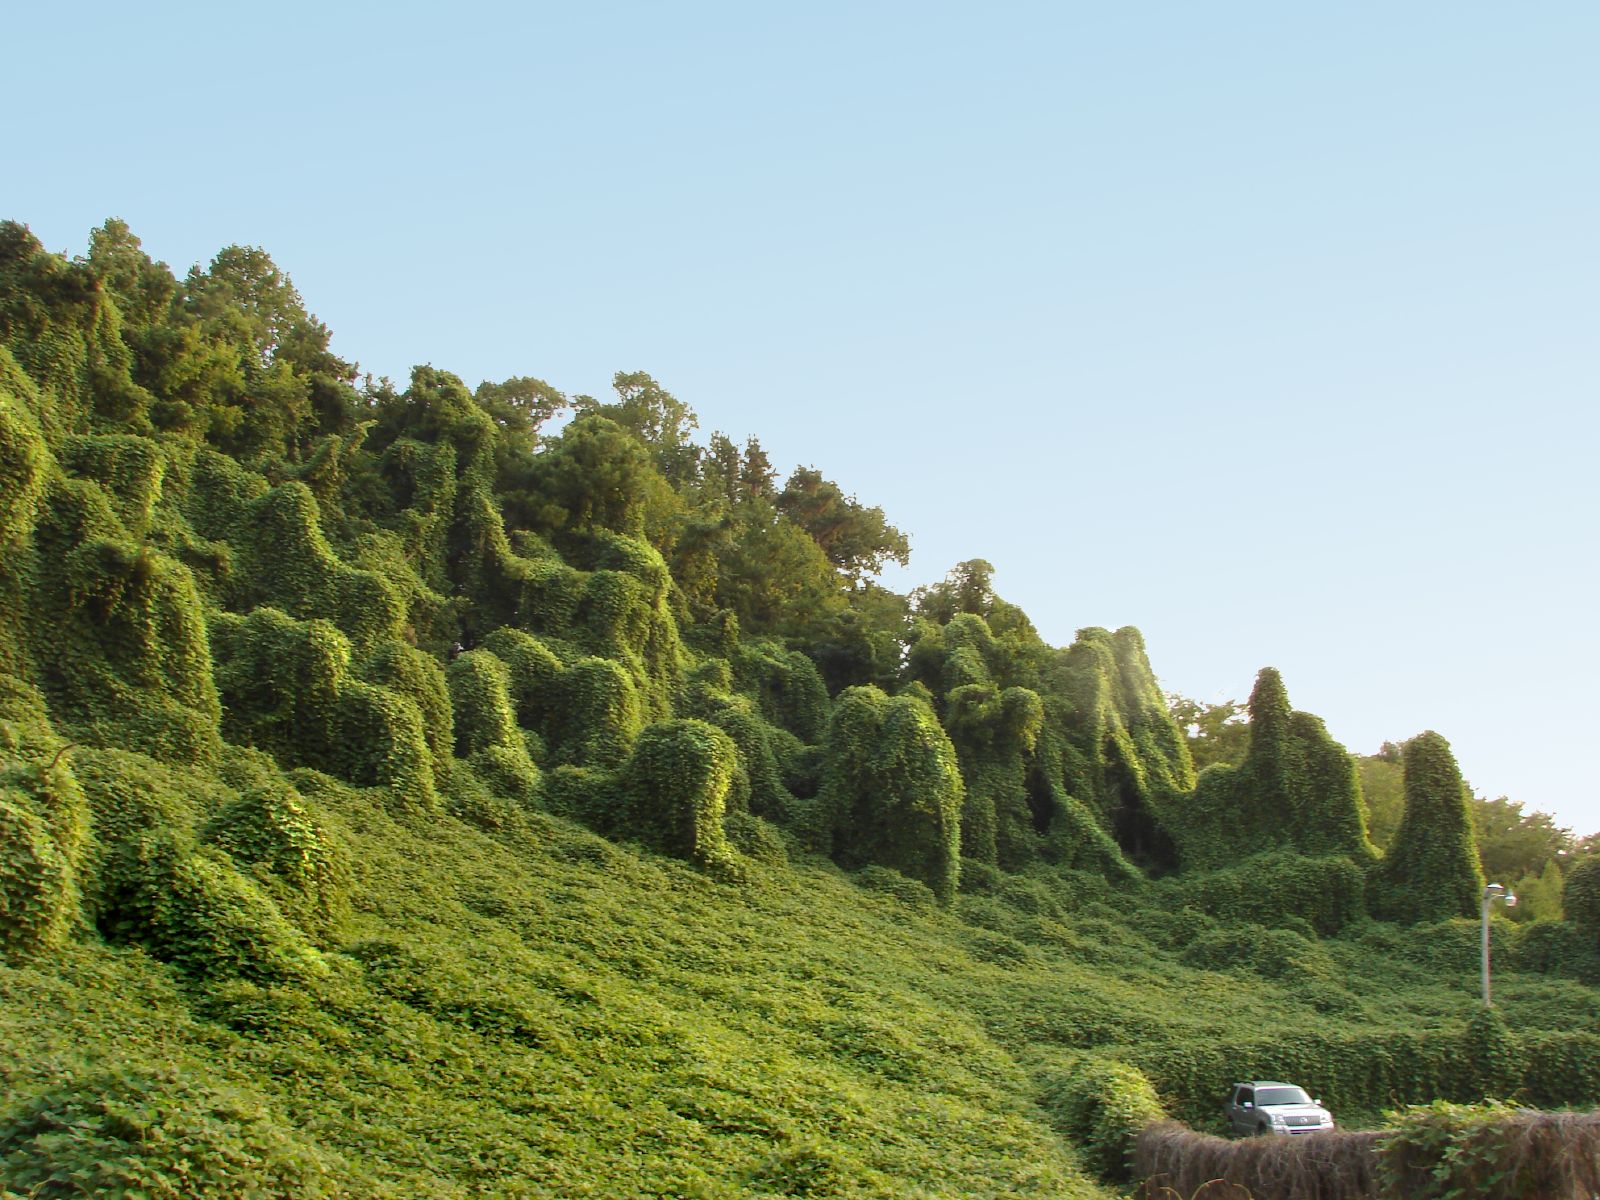 El kudzu de la vid crece sobre árboles y otras estructuras a lo largo de una pendiente, cubriéndolos totalmente.